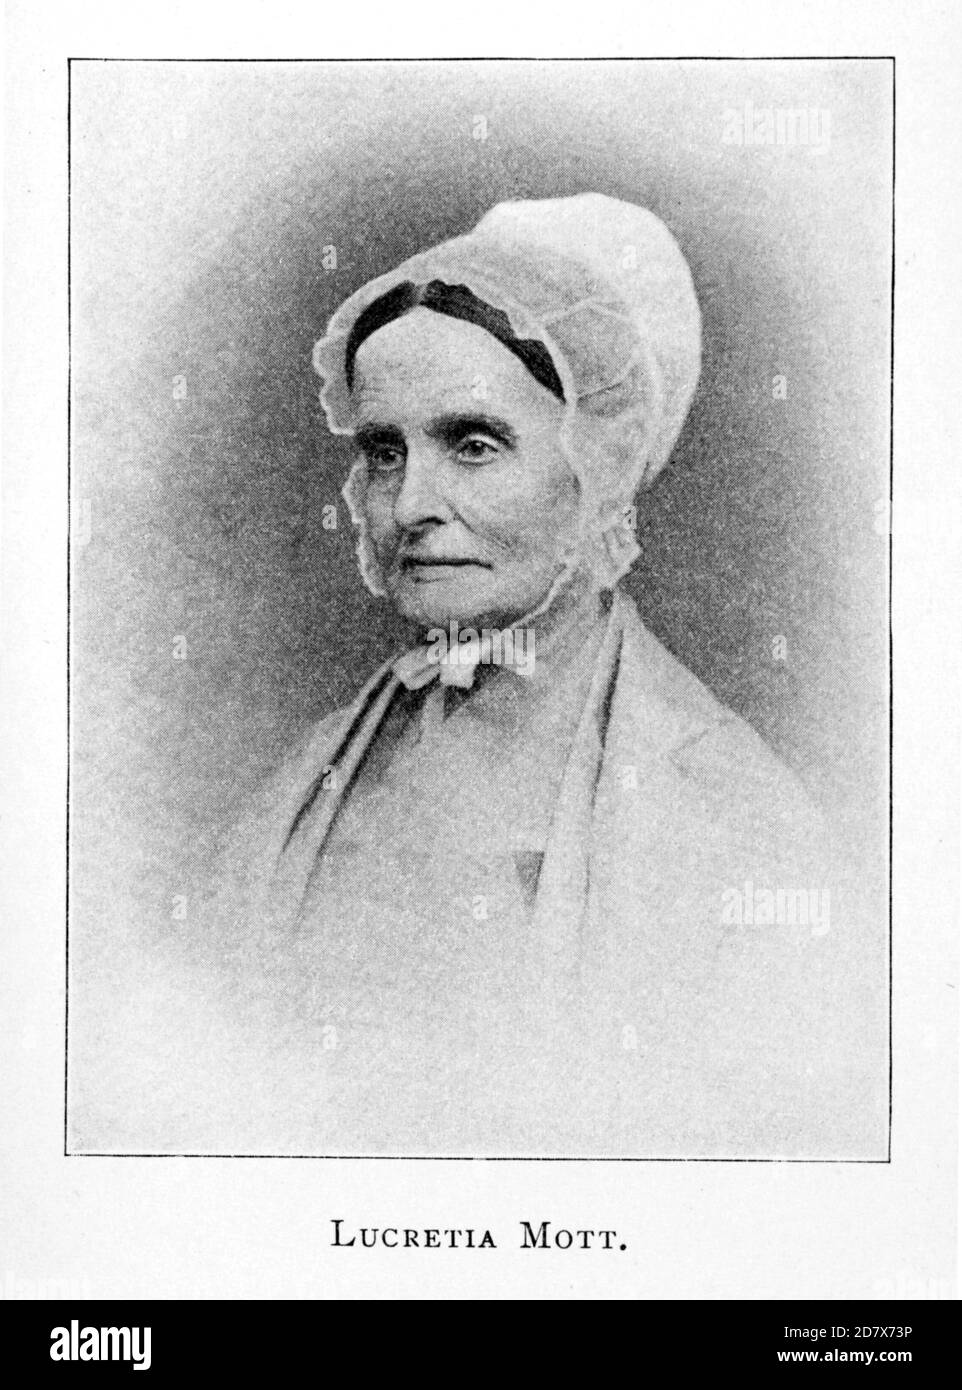 1870 c., USA : The american Quaker , abolitionist , Women's Rights activist and social reformer LUCRETIA MOTT ( born COFFIN , 1793 - 1880 ). Unknown engraver .- USA - ritratto - portrait  - RIFORMISTA - RIFORMISMO SOCIALE - FEMMINISTA - FEMINIST - ABOLIZIONISMO - ABOLIZIONISTA - ANTI-SCHIAVISMO - ANTISLAVERY MOVENENT - anti schiavismo - ANTI-SCHIAVISTA  - cuffia - hat - cappello - older woman - donna anziana vecchia ---  Archivio GBB Stock Photo